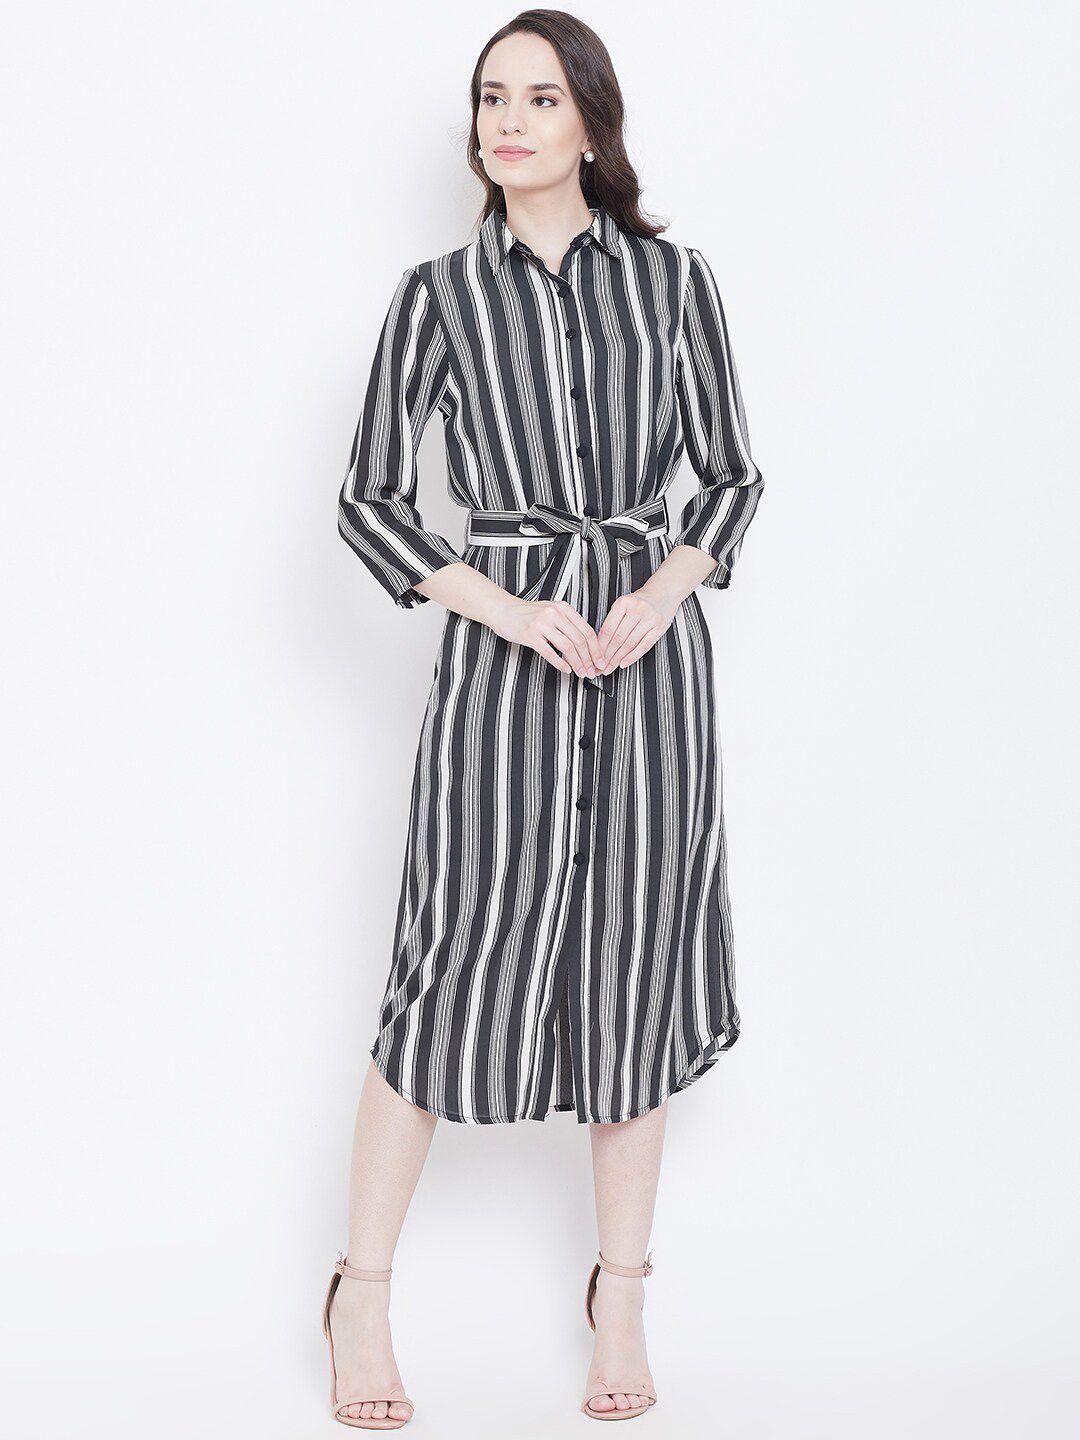 dodo-&-moa-black-&-white-striped-shirt-midi-dress